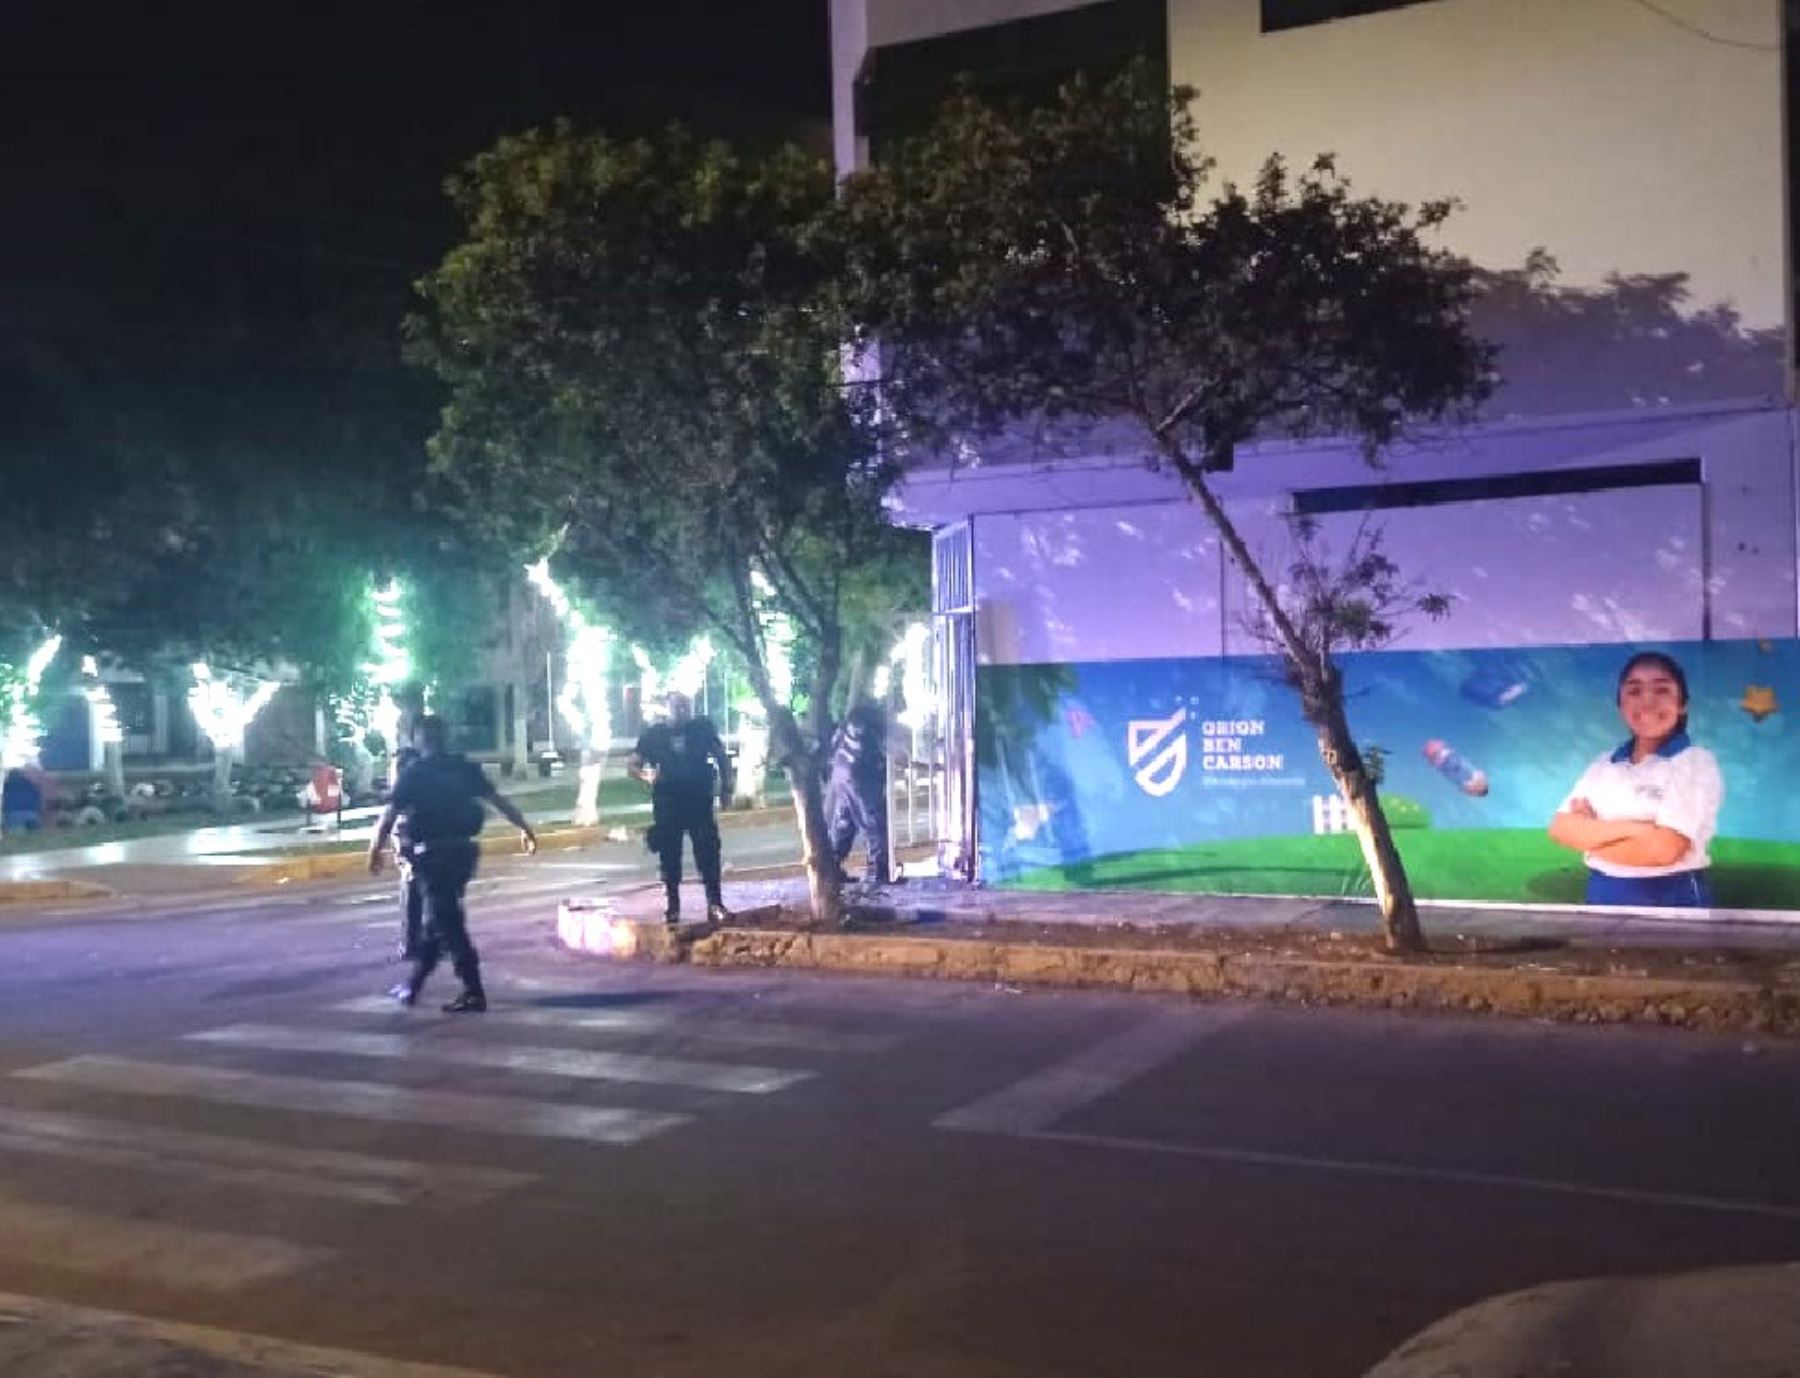 Suspensión de clases por seguridad tras explosión en colegio de Trujillo